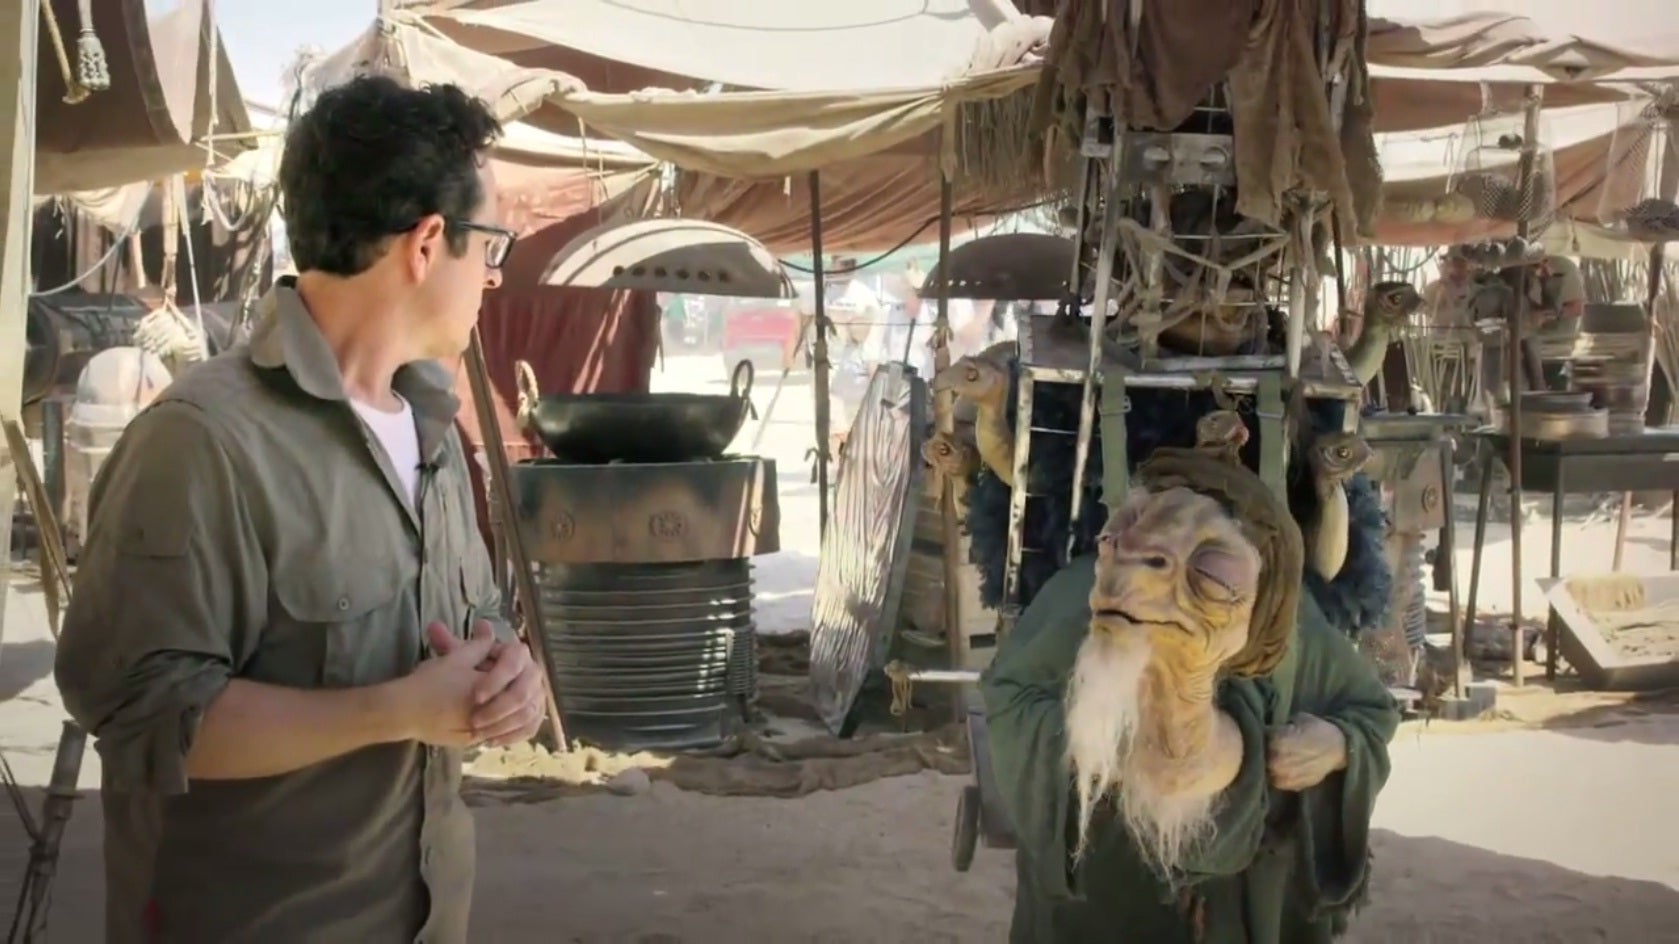 Star Wars 7 is filming Tatooine scenes in Abu Dhabi